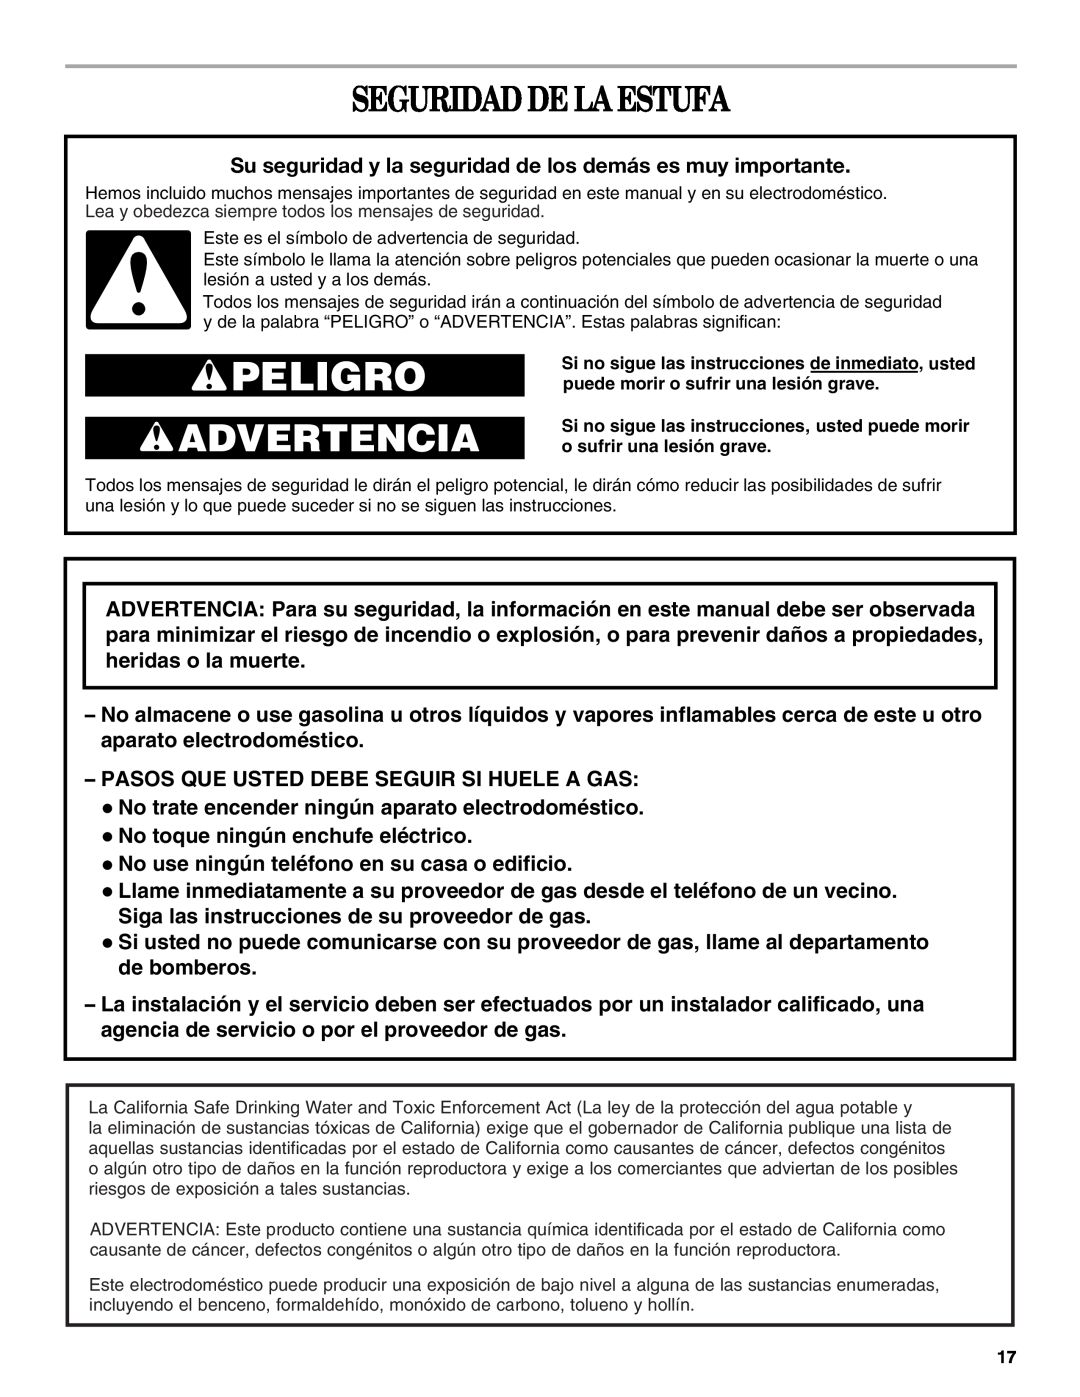 Whirlpool SF315PEPB0 manual Seguridad De La Estufa, Peligro, Advertencia 